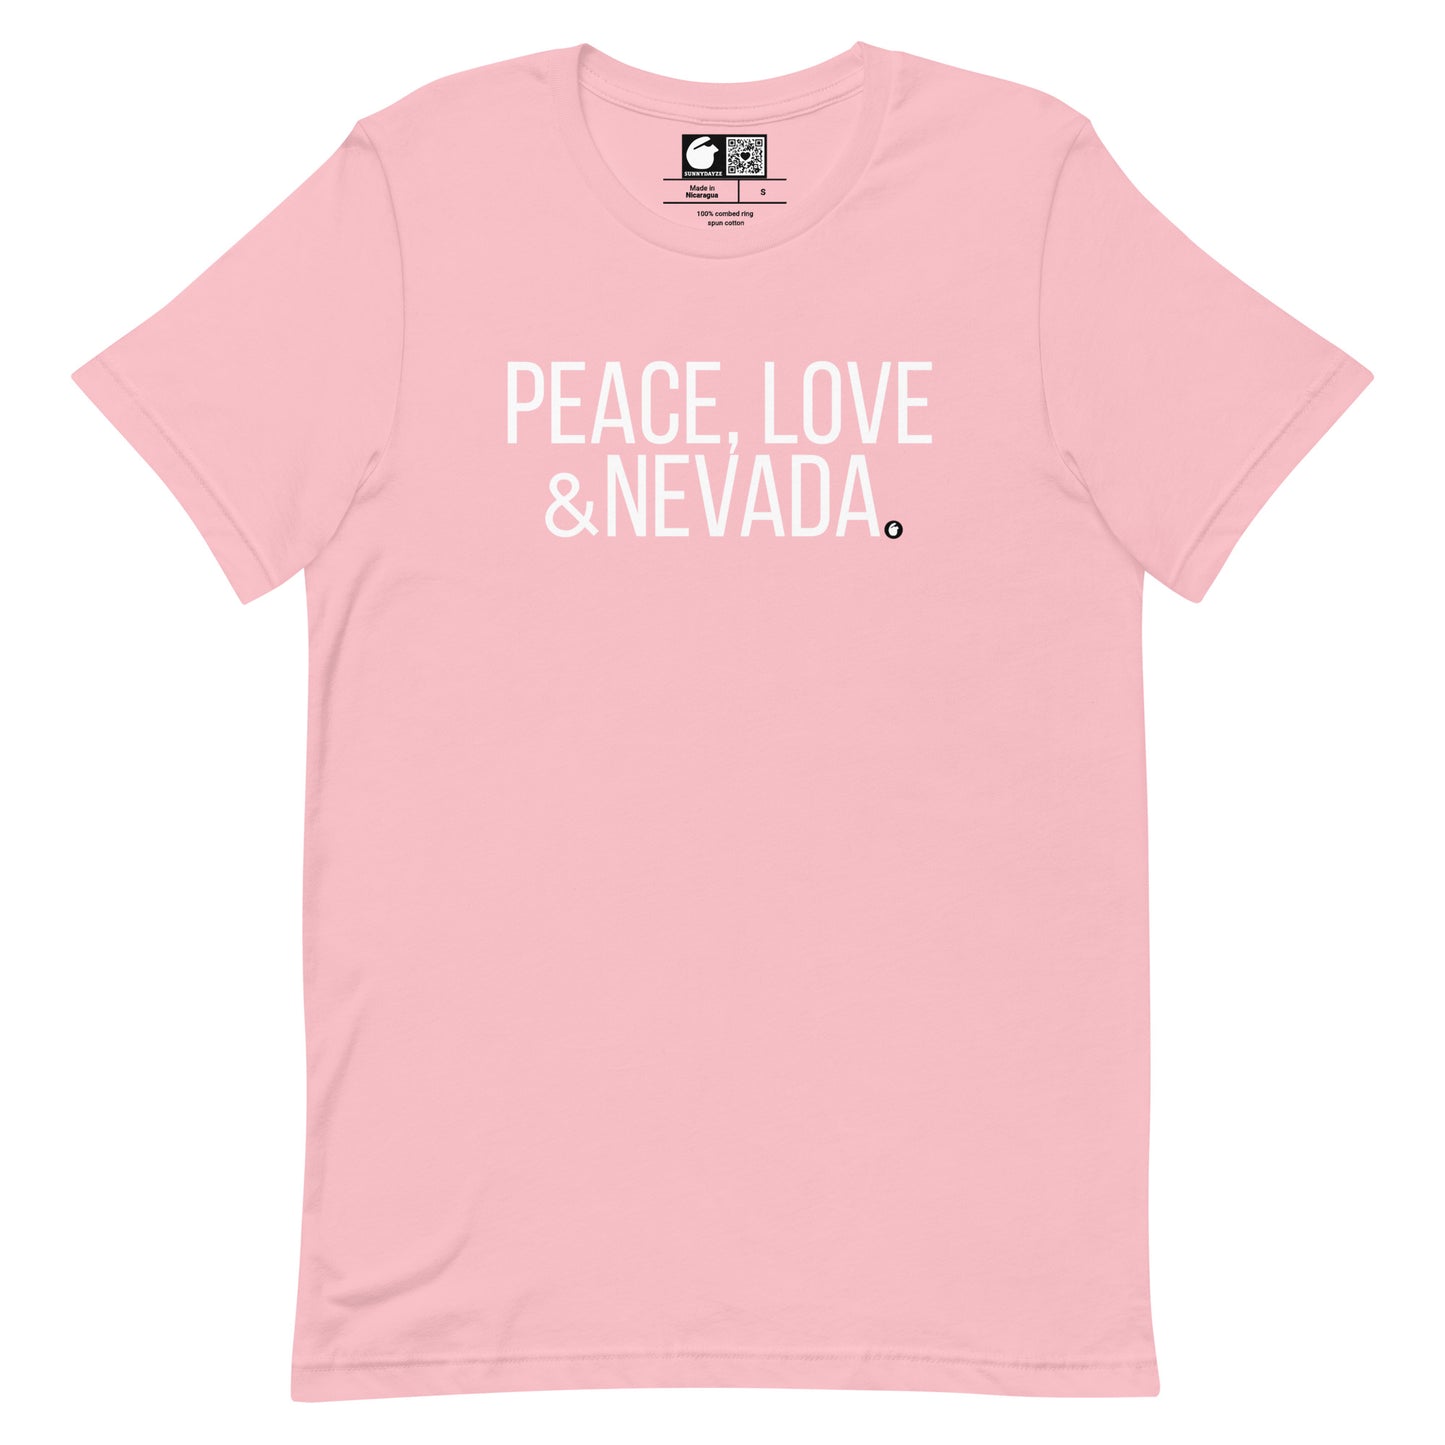 NEVADA Short-Sleeve unisex t-shirt